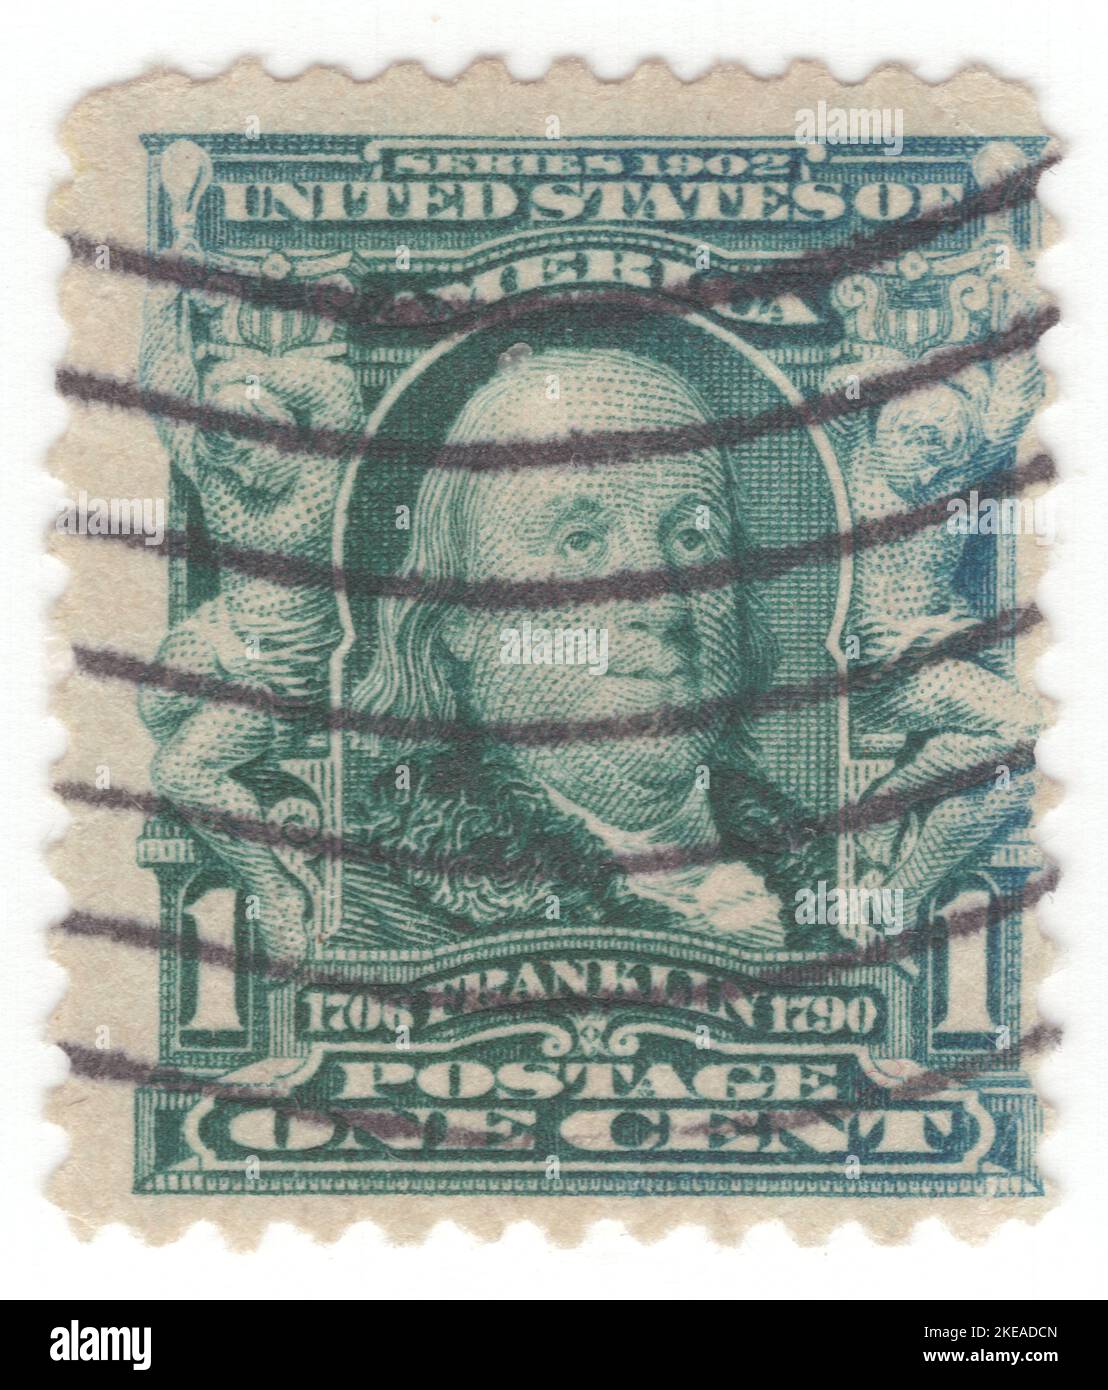 USA - 1903: Timbre-poste bleu-vert de 1 cents représentant le portrait de Benjamin Franklin. Un homme d'État américain qui était actif en tant qu'écrivain, scientifique, inventeur, diplomate, imprimeur, éditeur et philosophe politique. Parmi les principaux intellectuels de son époque, Franklin était l'un des Pères fondateurs des États-Unis, rédacteur et signataire de la Déclaration d'indépendance des États-Unis, et le premier ministre des postes des États-Unis Banque D'Images